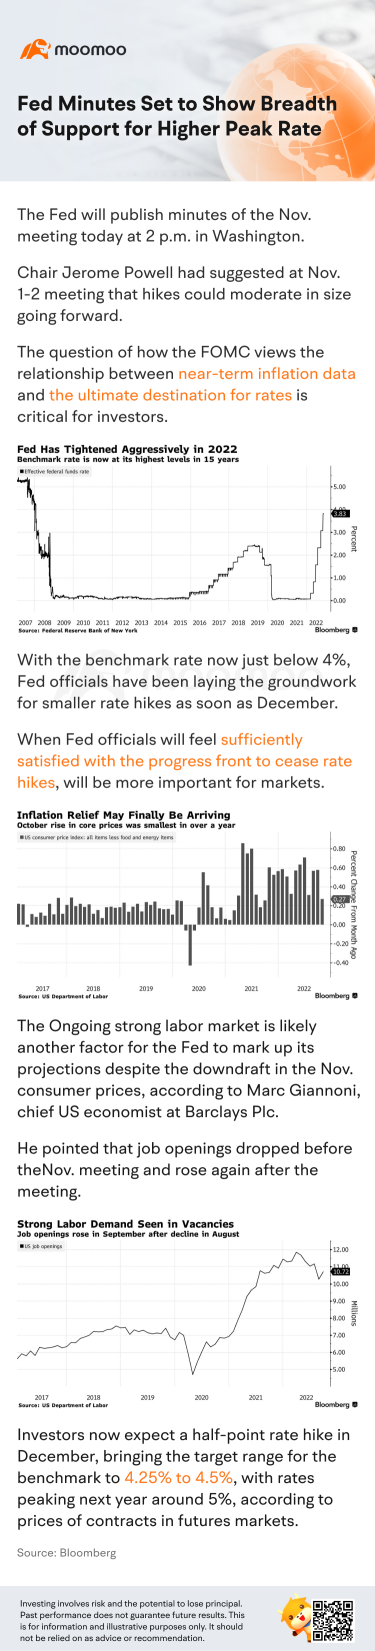 美联储会议纪要将显示对更高峰值利率的广泛支持